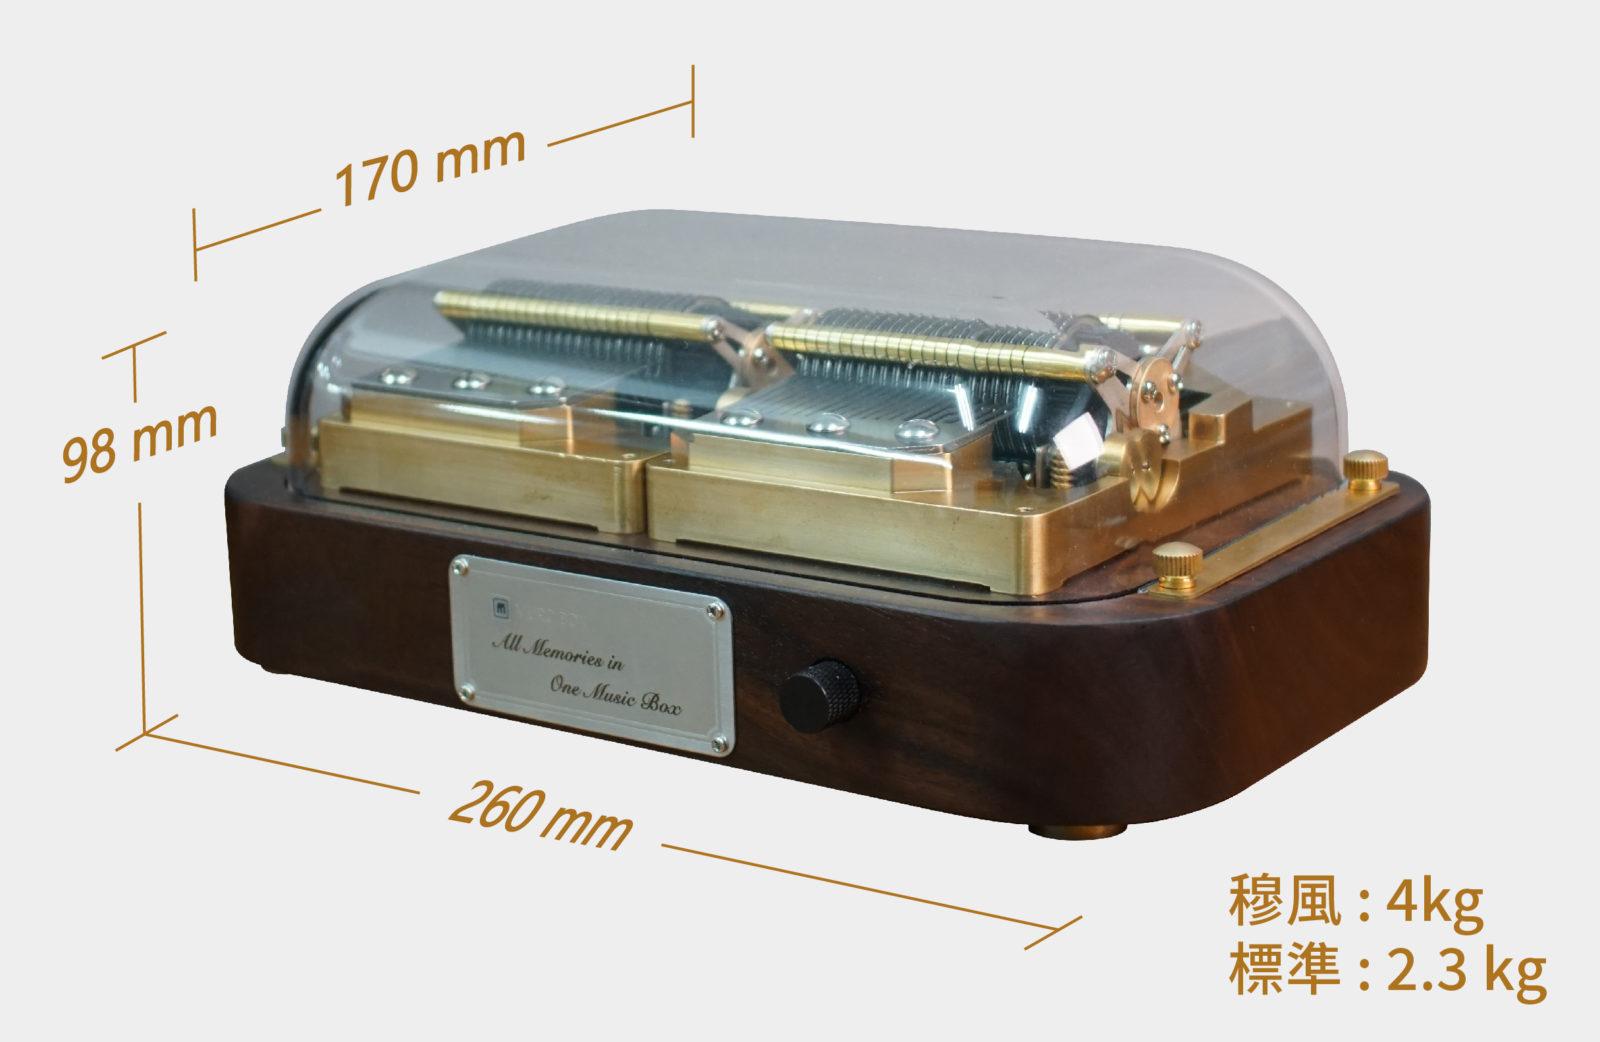 Muro Box-N40 尺寸為 260 mm 長 x 170 mm 寬 x 98 mm 高 ，穆風 重 4 公斤，標準版重 2.3 公斤，兩款皆份量十足。